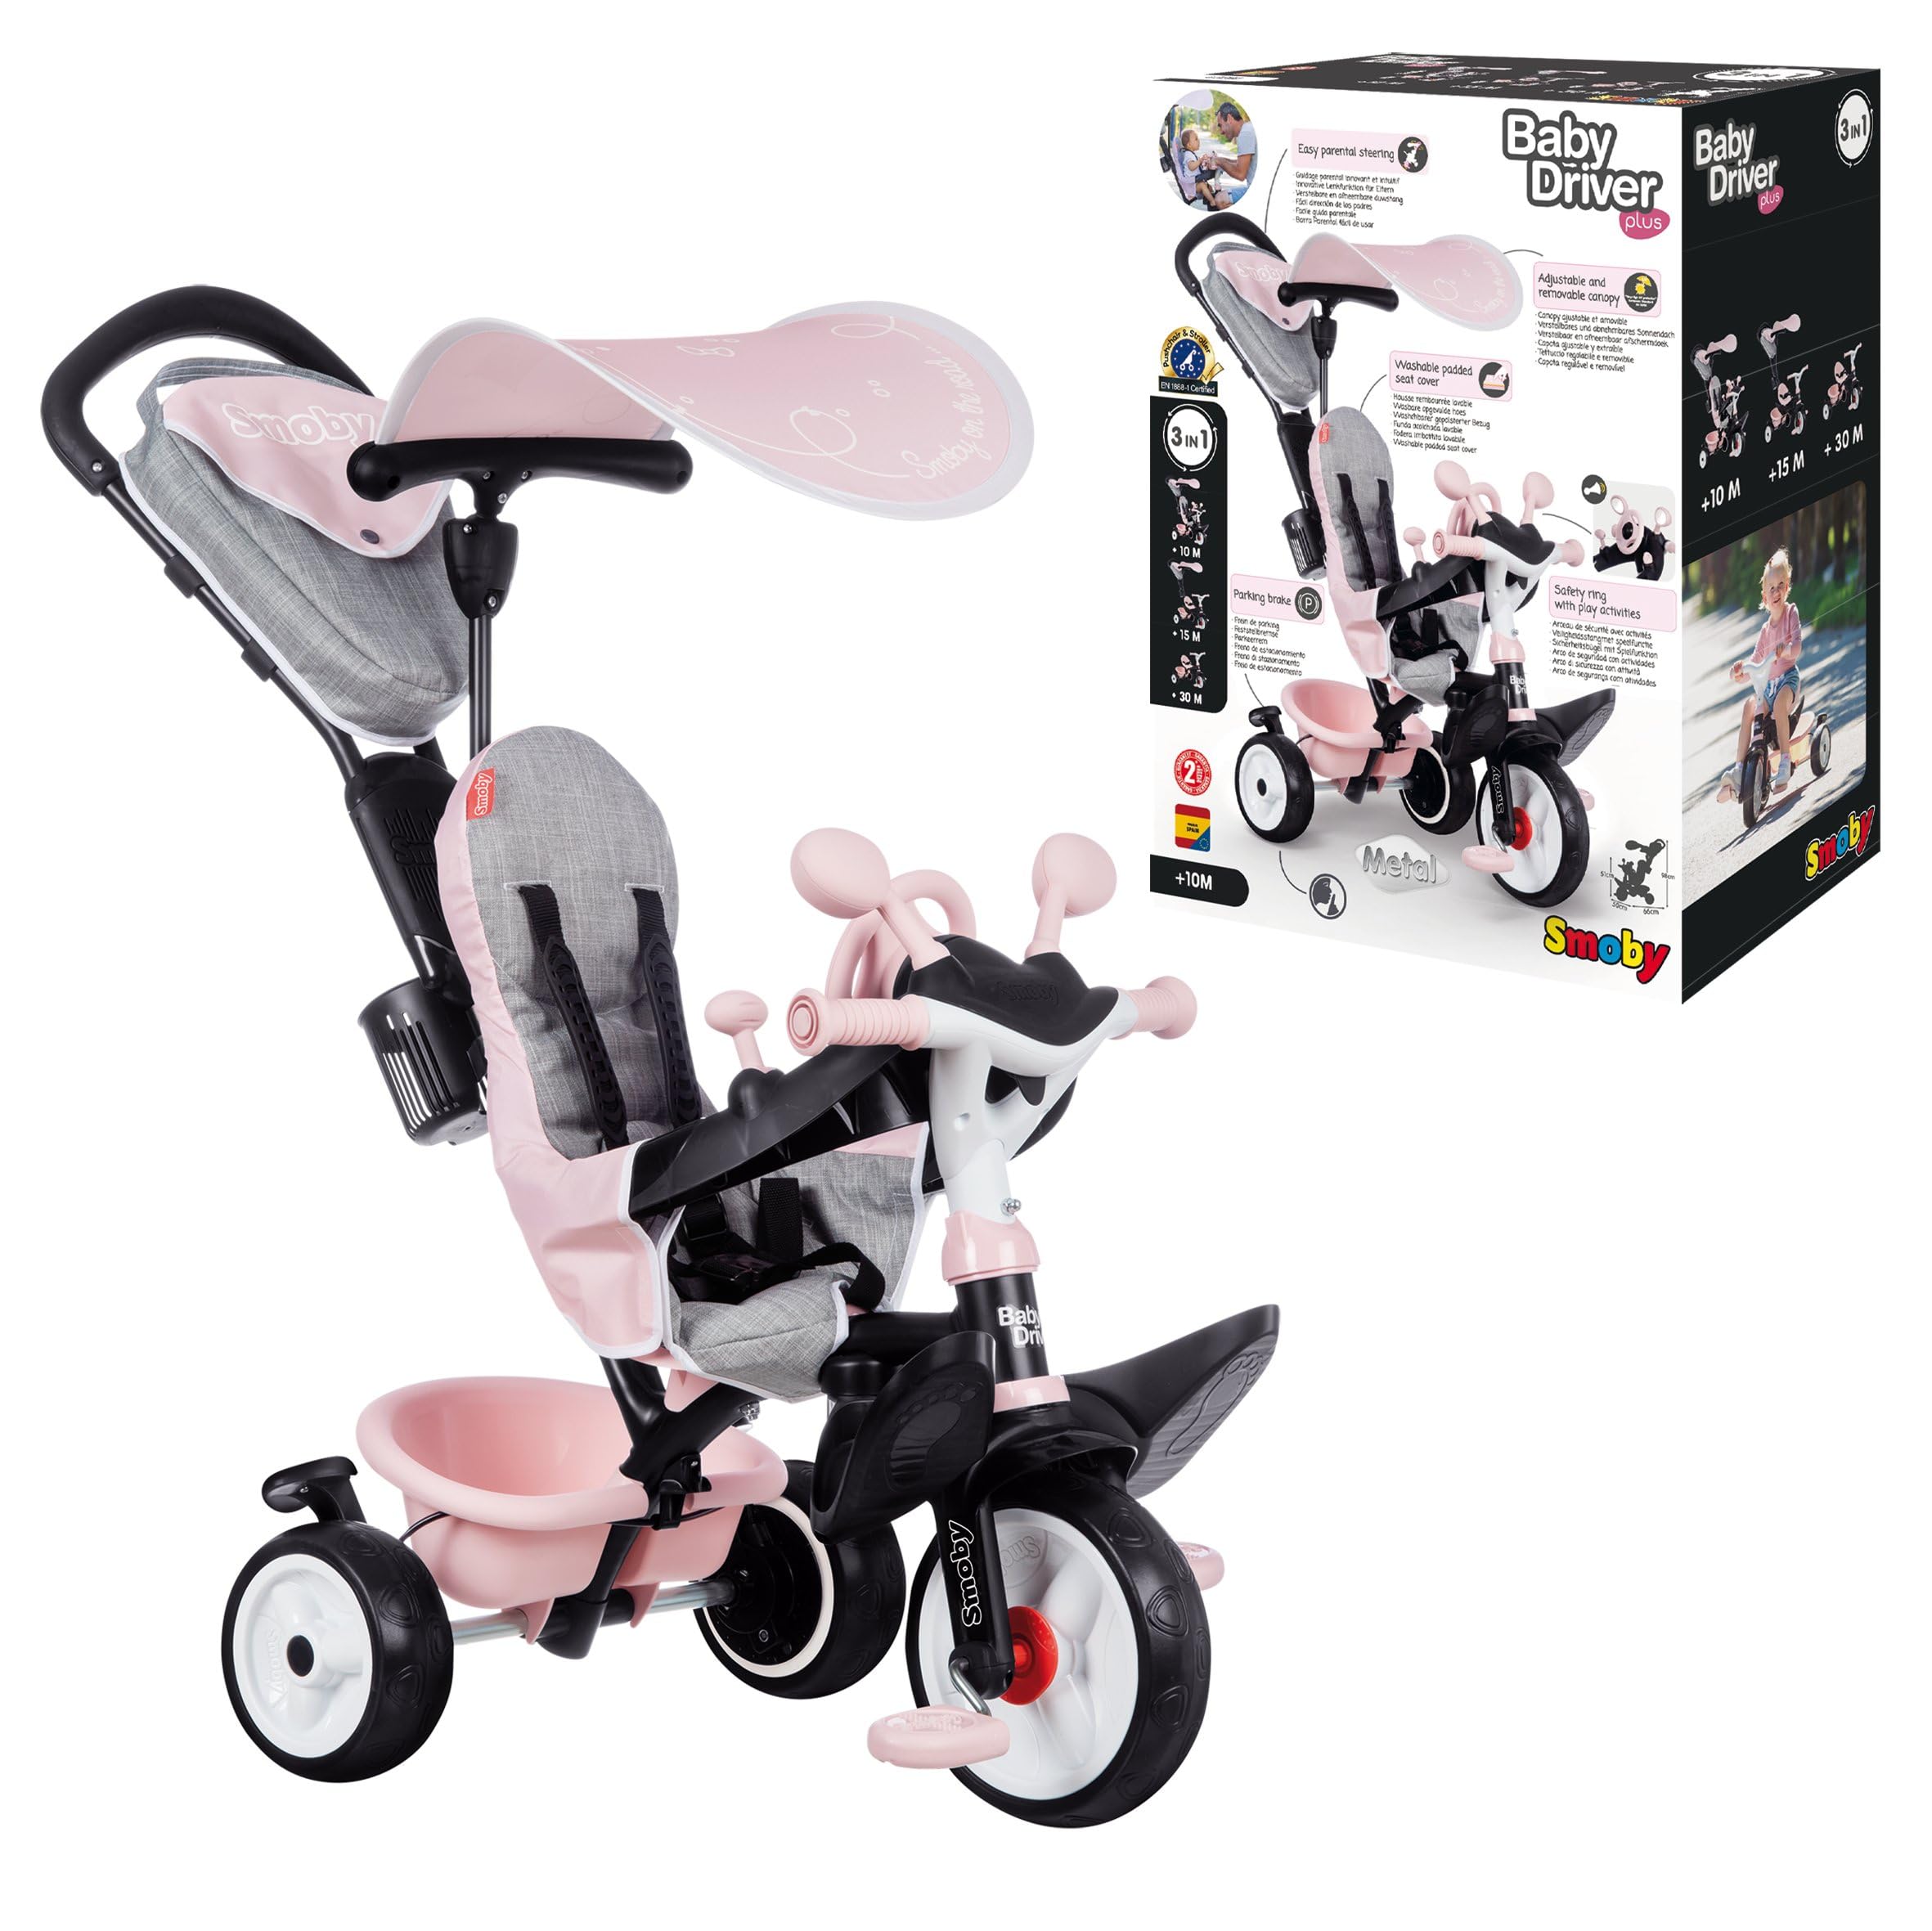 Smoby - Baby Driver Plus Rosa - 3-in-1 Kinder Dreirad, mitwachsendes Multifunktionsfahrzeug mit premium Ausstattung, für Kinder ab 10 Monaten